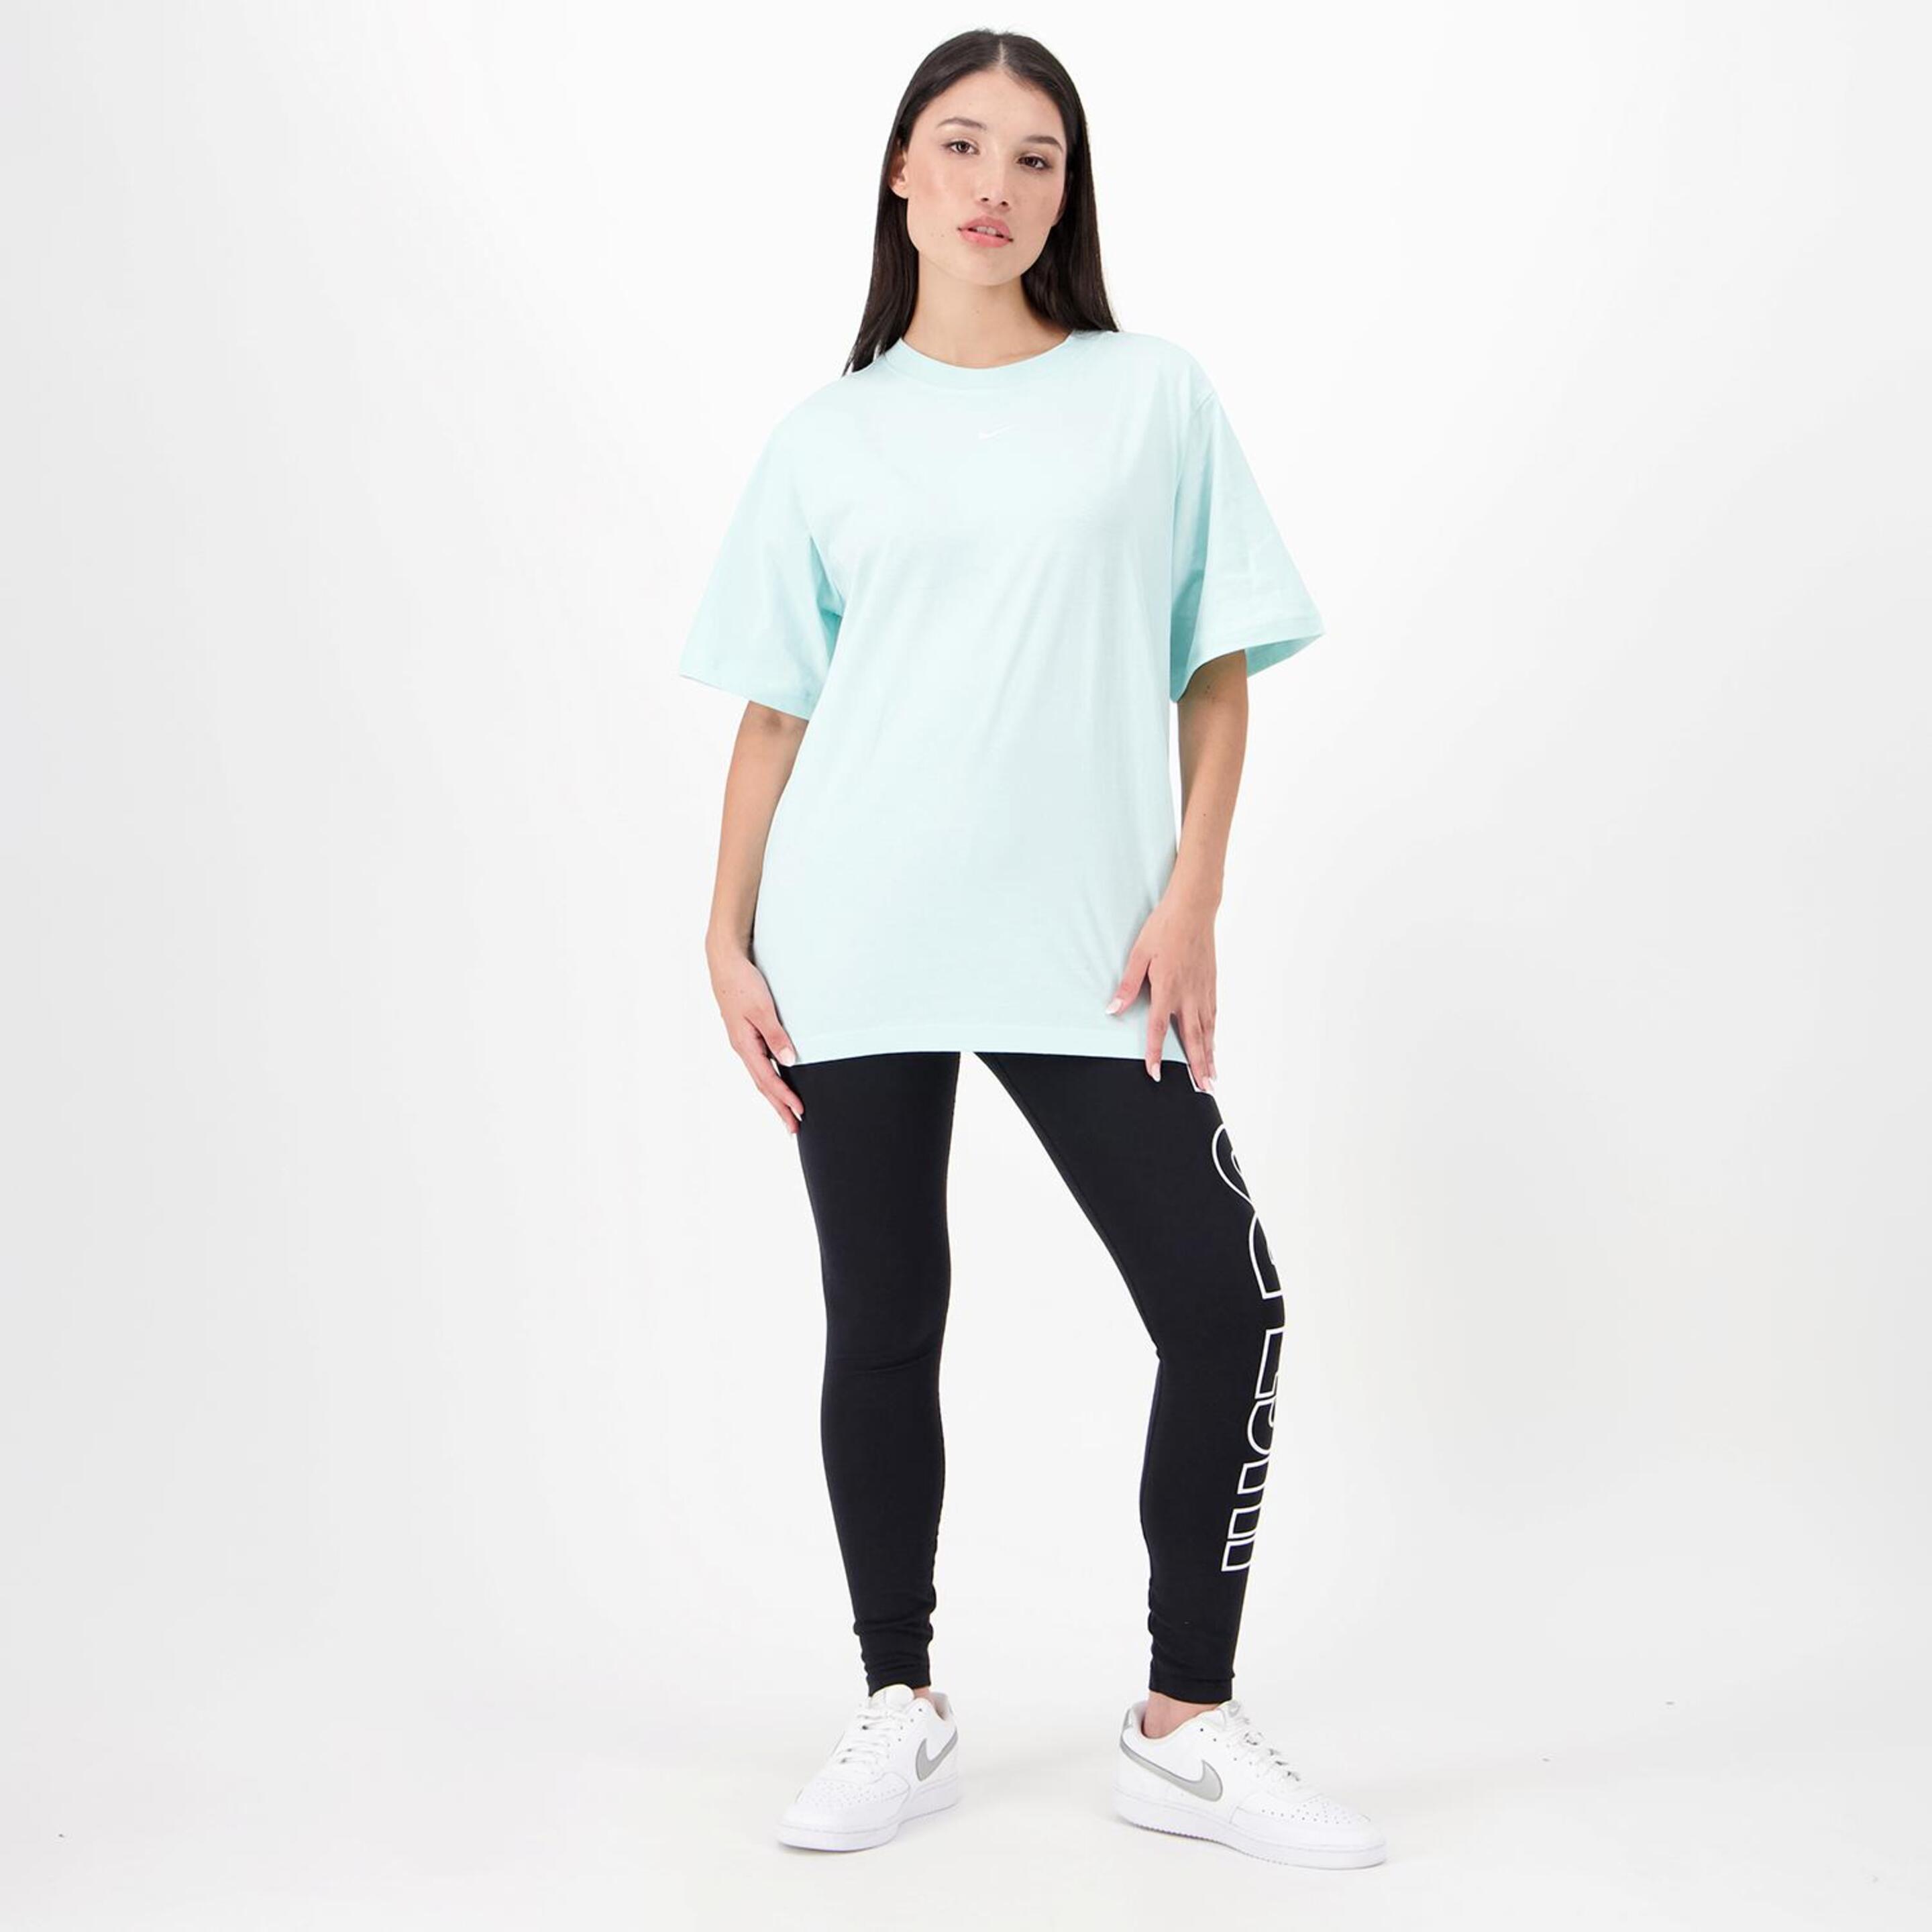 Nike Small Logo - Azul - Camiseta Oversize Mujer